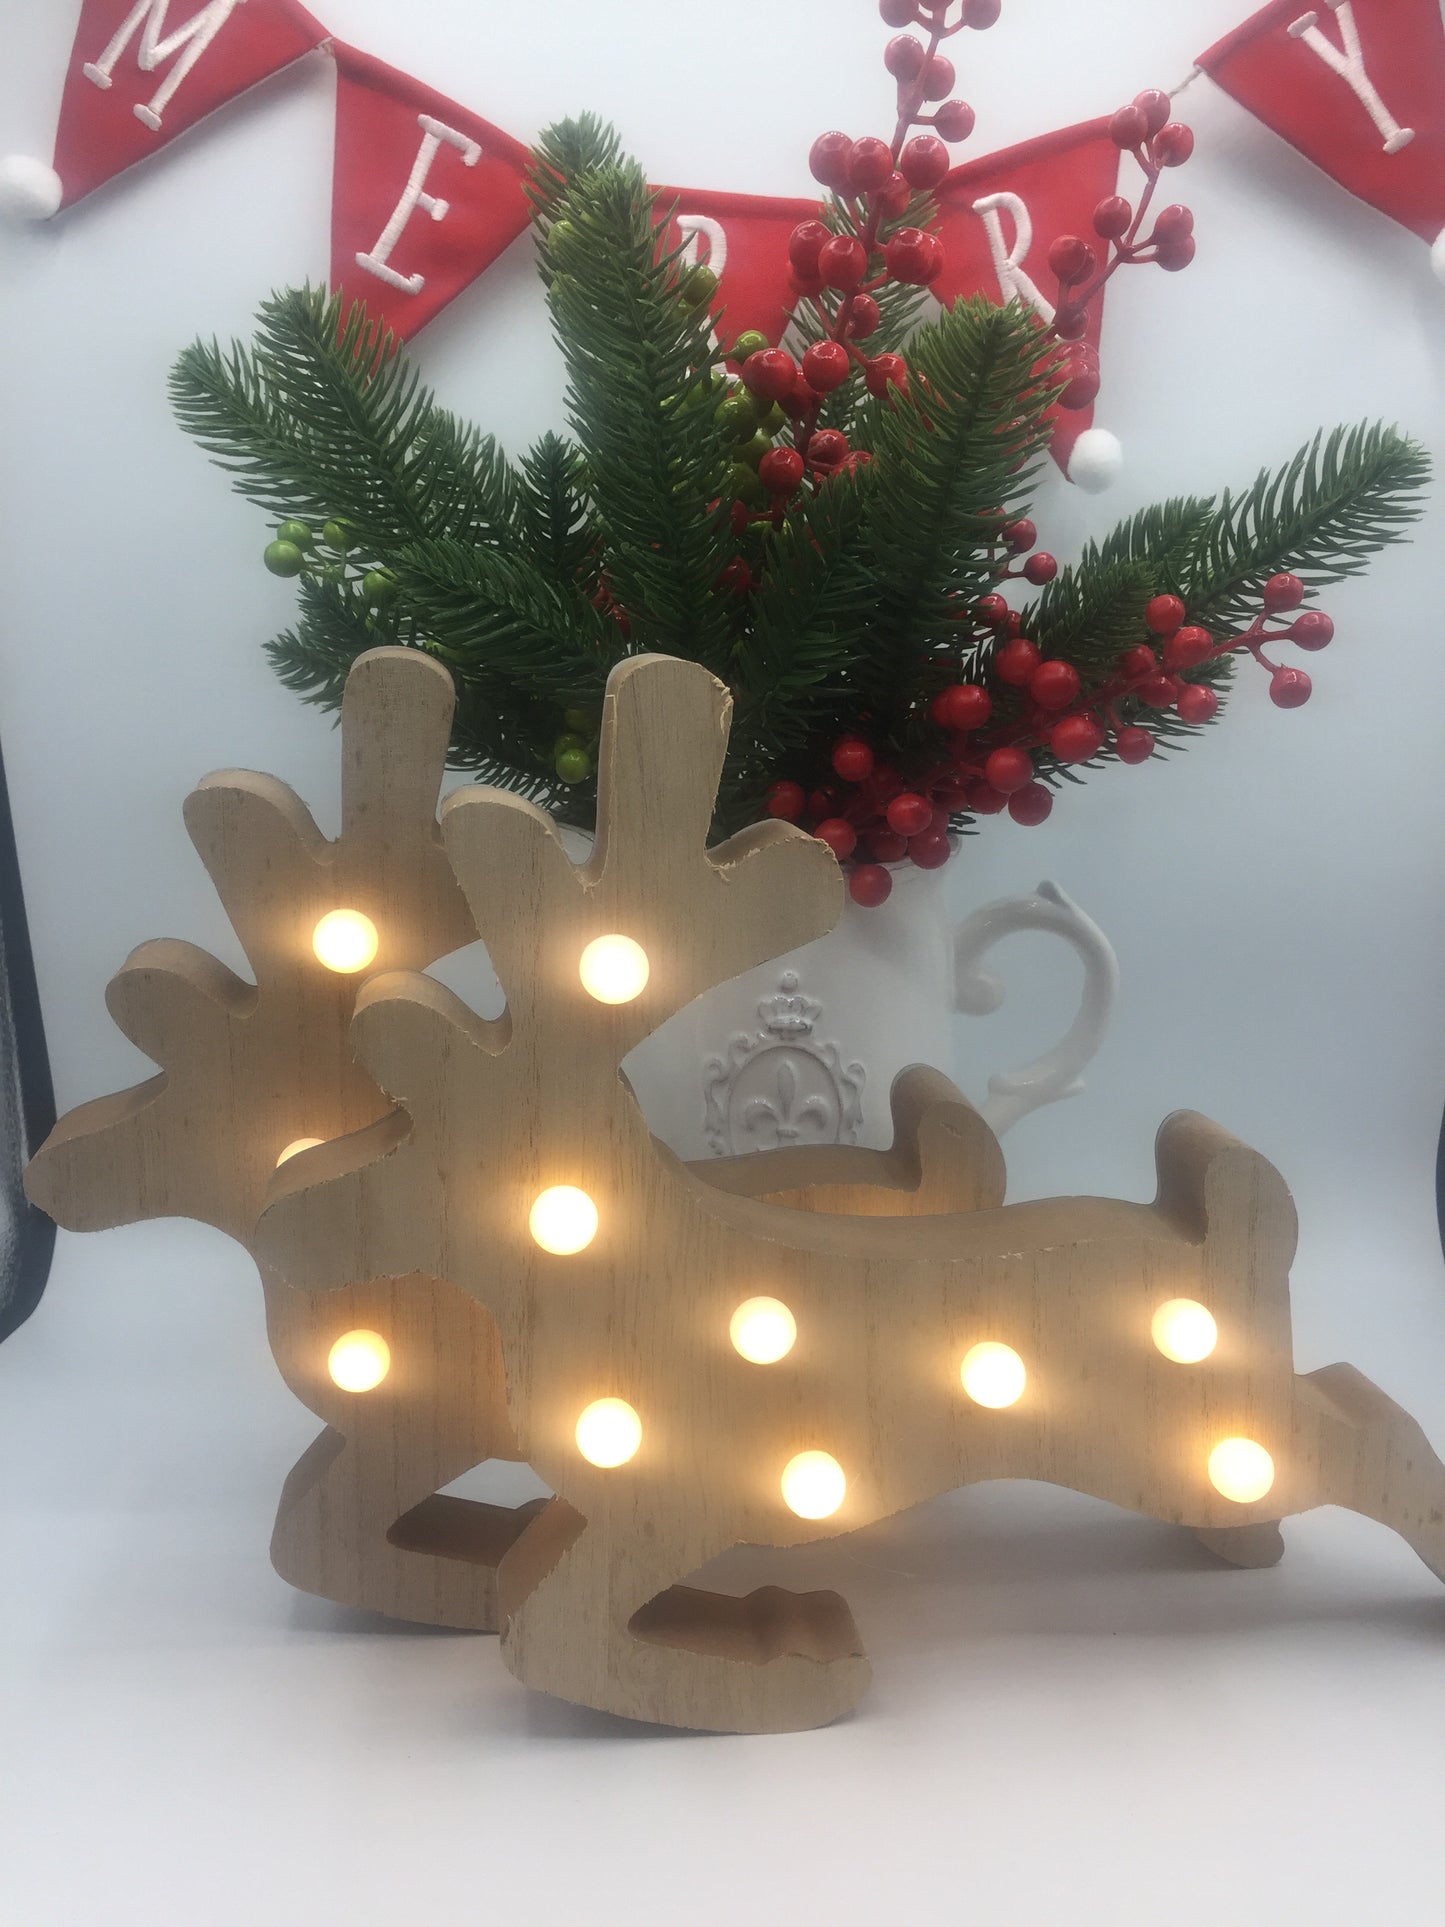 Wooden Light Up Christmas Reindeer